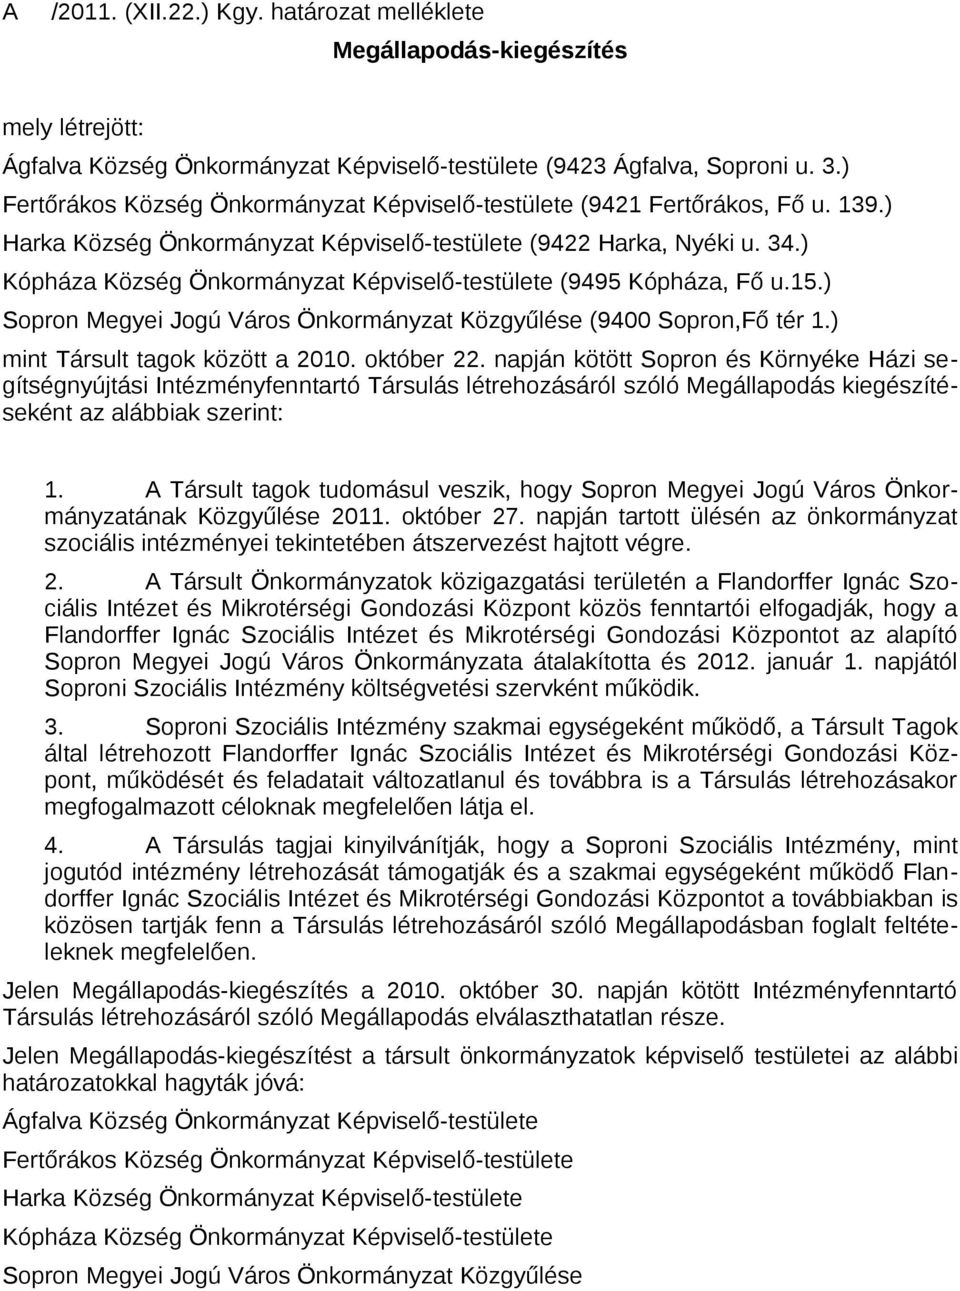 ) Kópháza Község Önkormányzat Képviselő-testülete (9495 Kópháza, Fő u.15.) Sopron Megyei Jogú Város Önkormányzat Közgyűlése (9400 Sopron,Fő tér 1.) mint Társult tagok között a 2010. október 22.